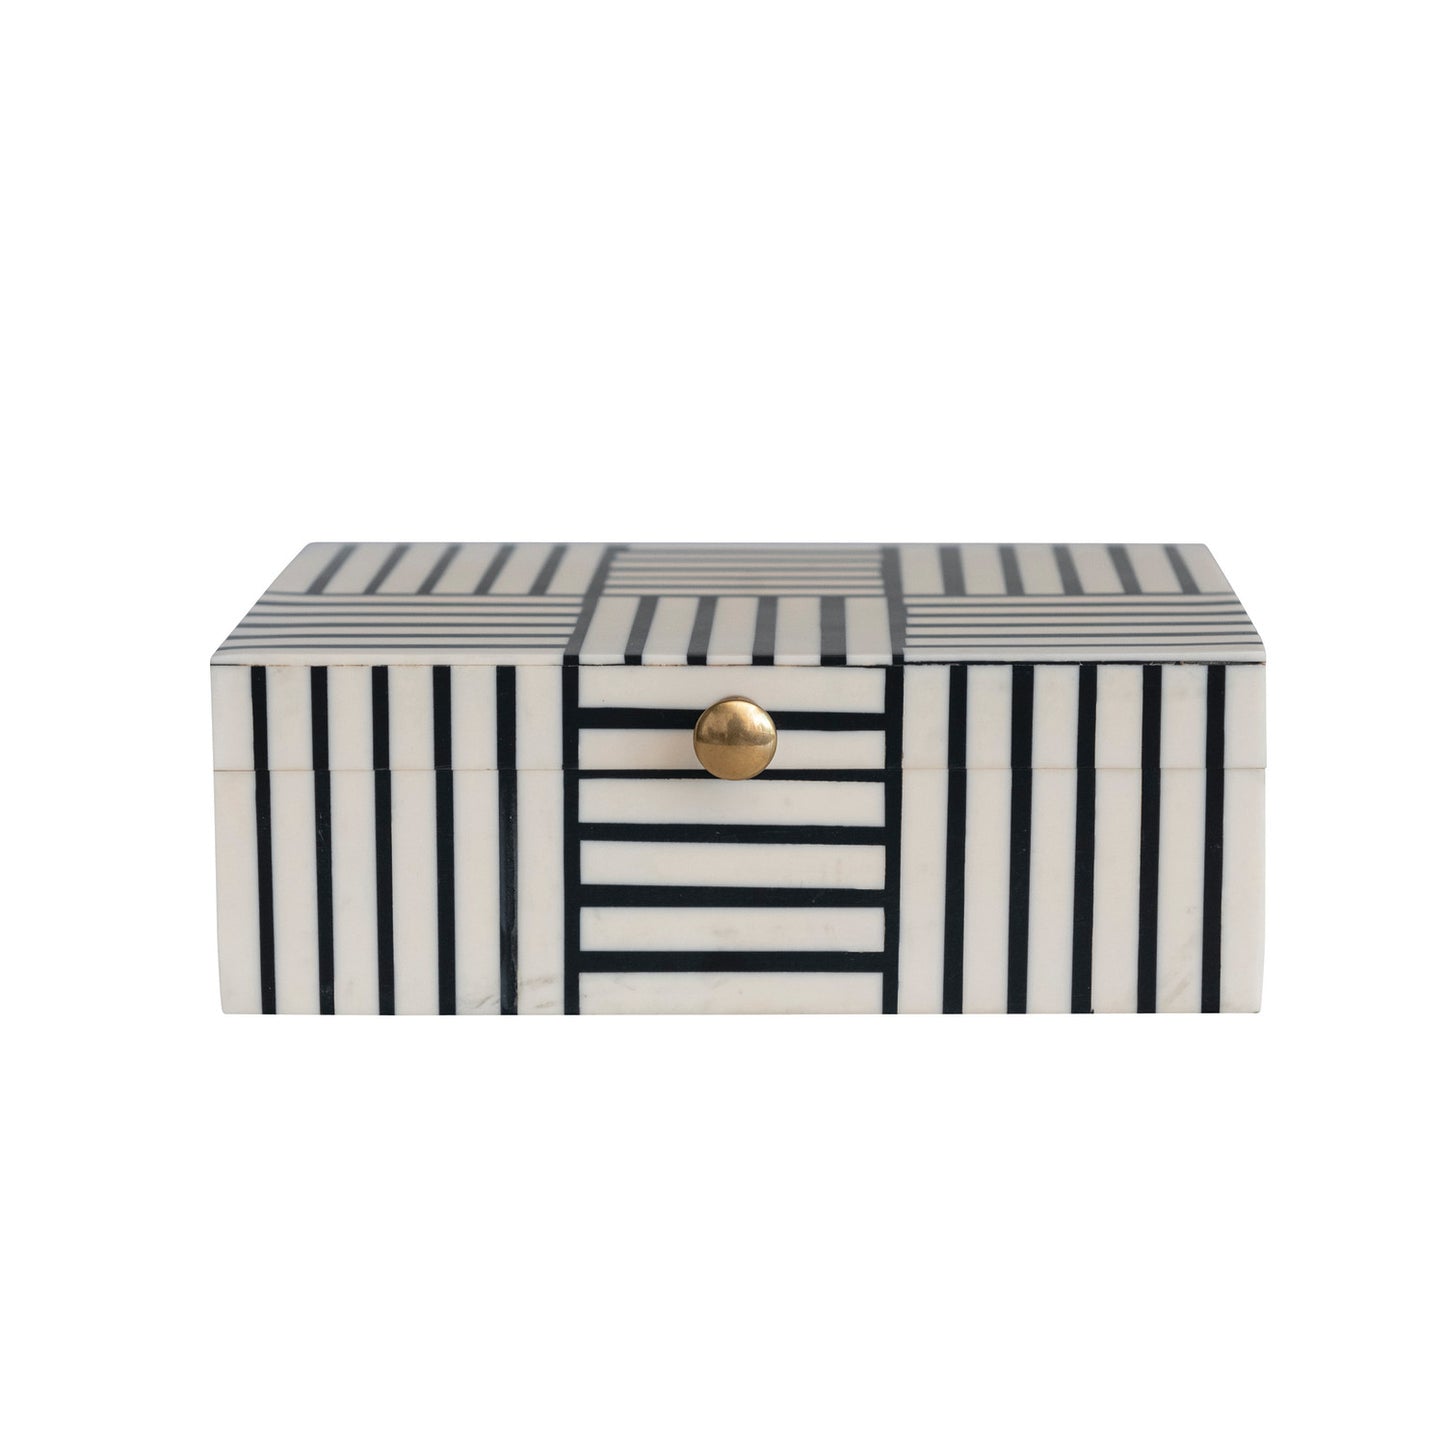 Resin Box w/ Striped Block Pattern & Gold Knob, Black & White